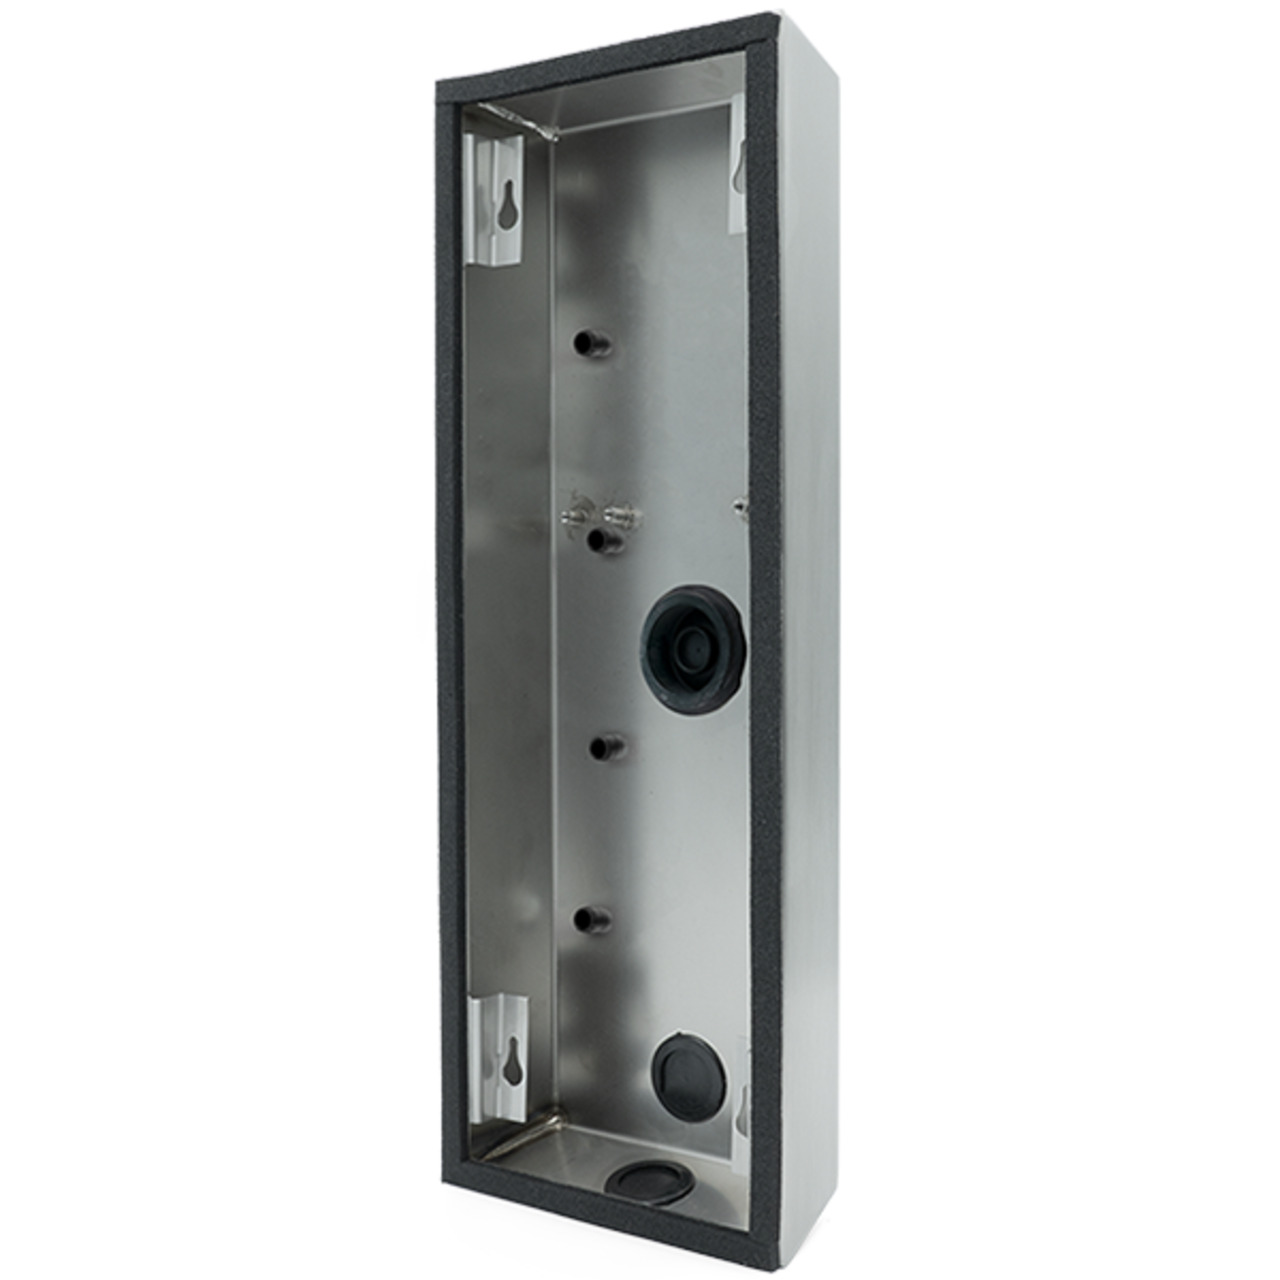 DoorBird Aufputz-Montage-Rückgehäuse D2101KV für Türsprechanlagen- Edelstahl V4A- gebürstet unter Haustechnik